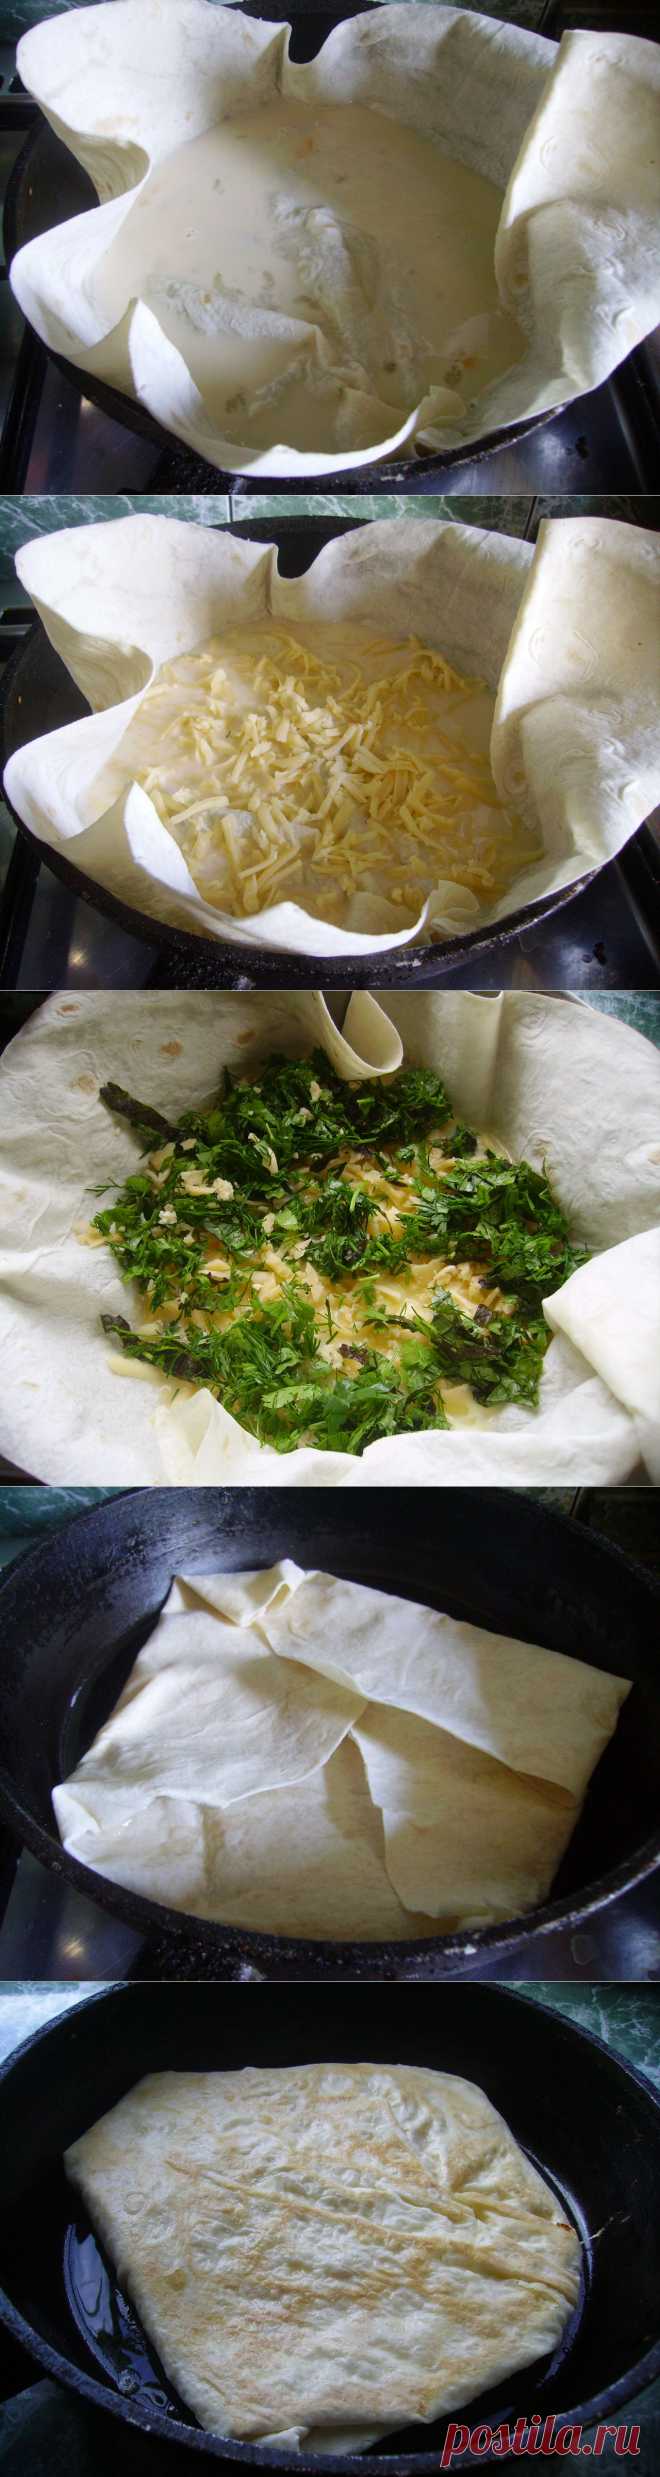 Ёка – бесподобная закуска из лаваша с сырным омлетом | Блог Лены Радовой